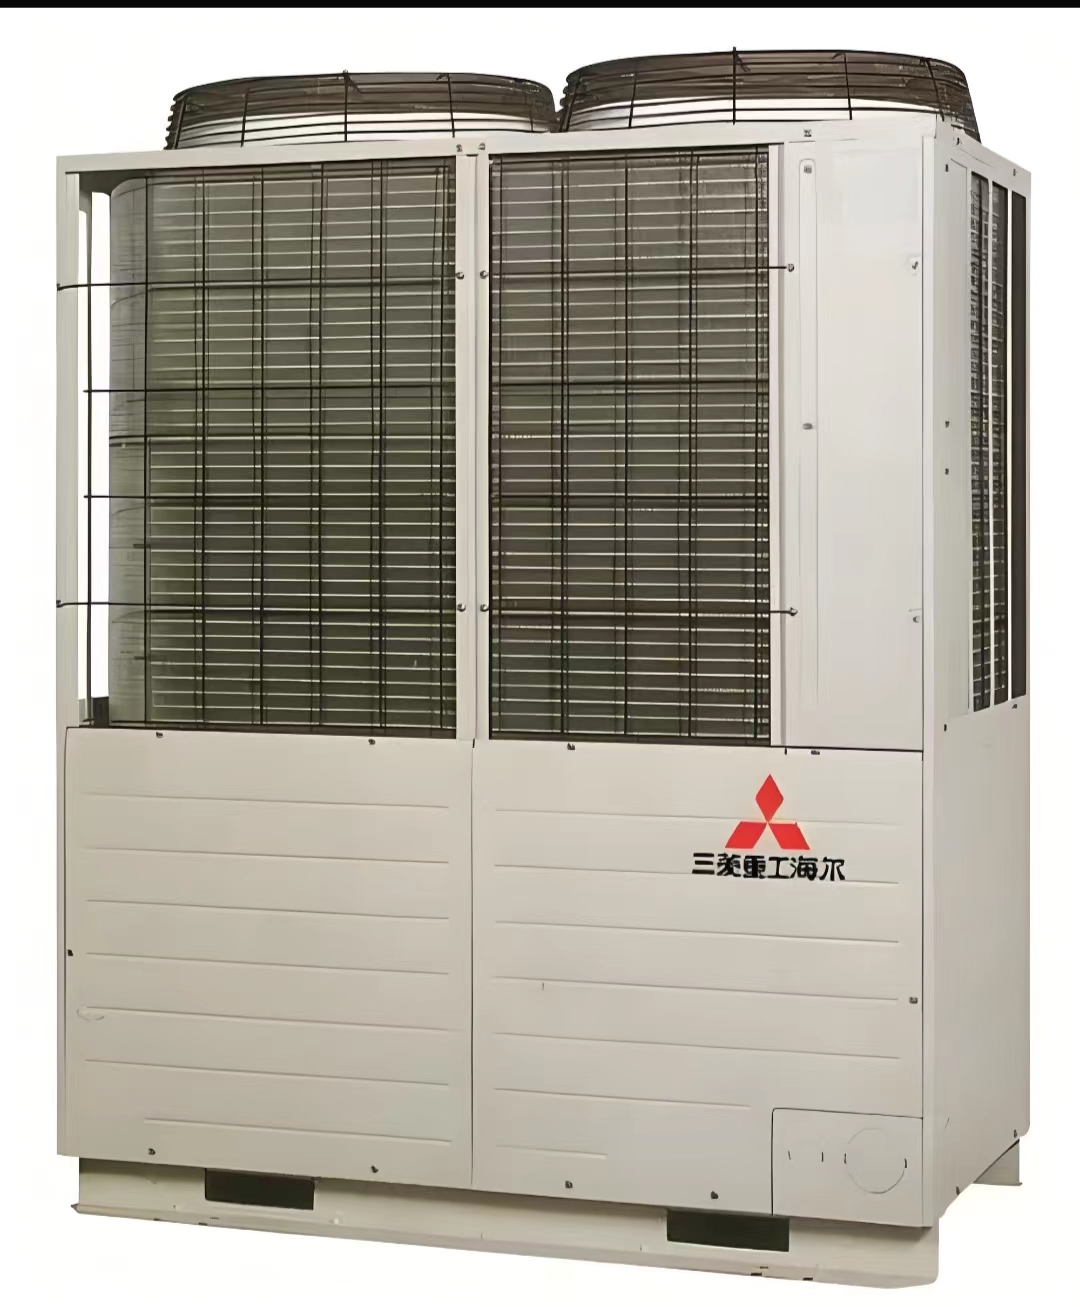 三菱重工Haier风冷模块机 风冷热泵机组 中央空调 销售安装设计 厂家价格 制冷设备环保节能制冷剂图片